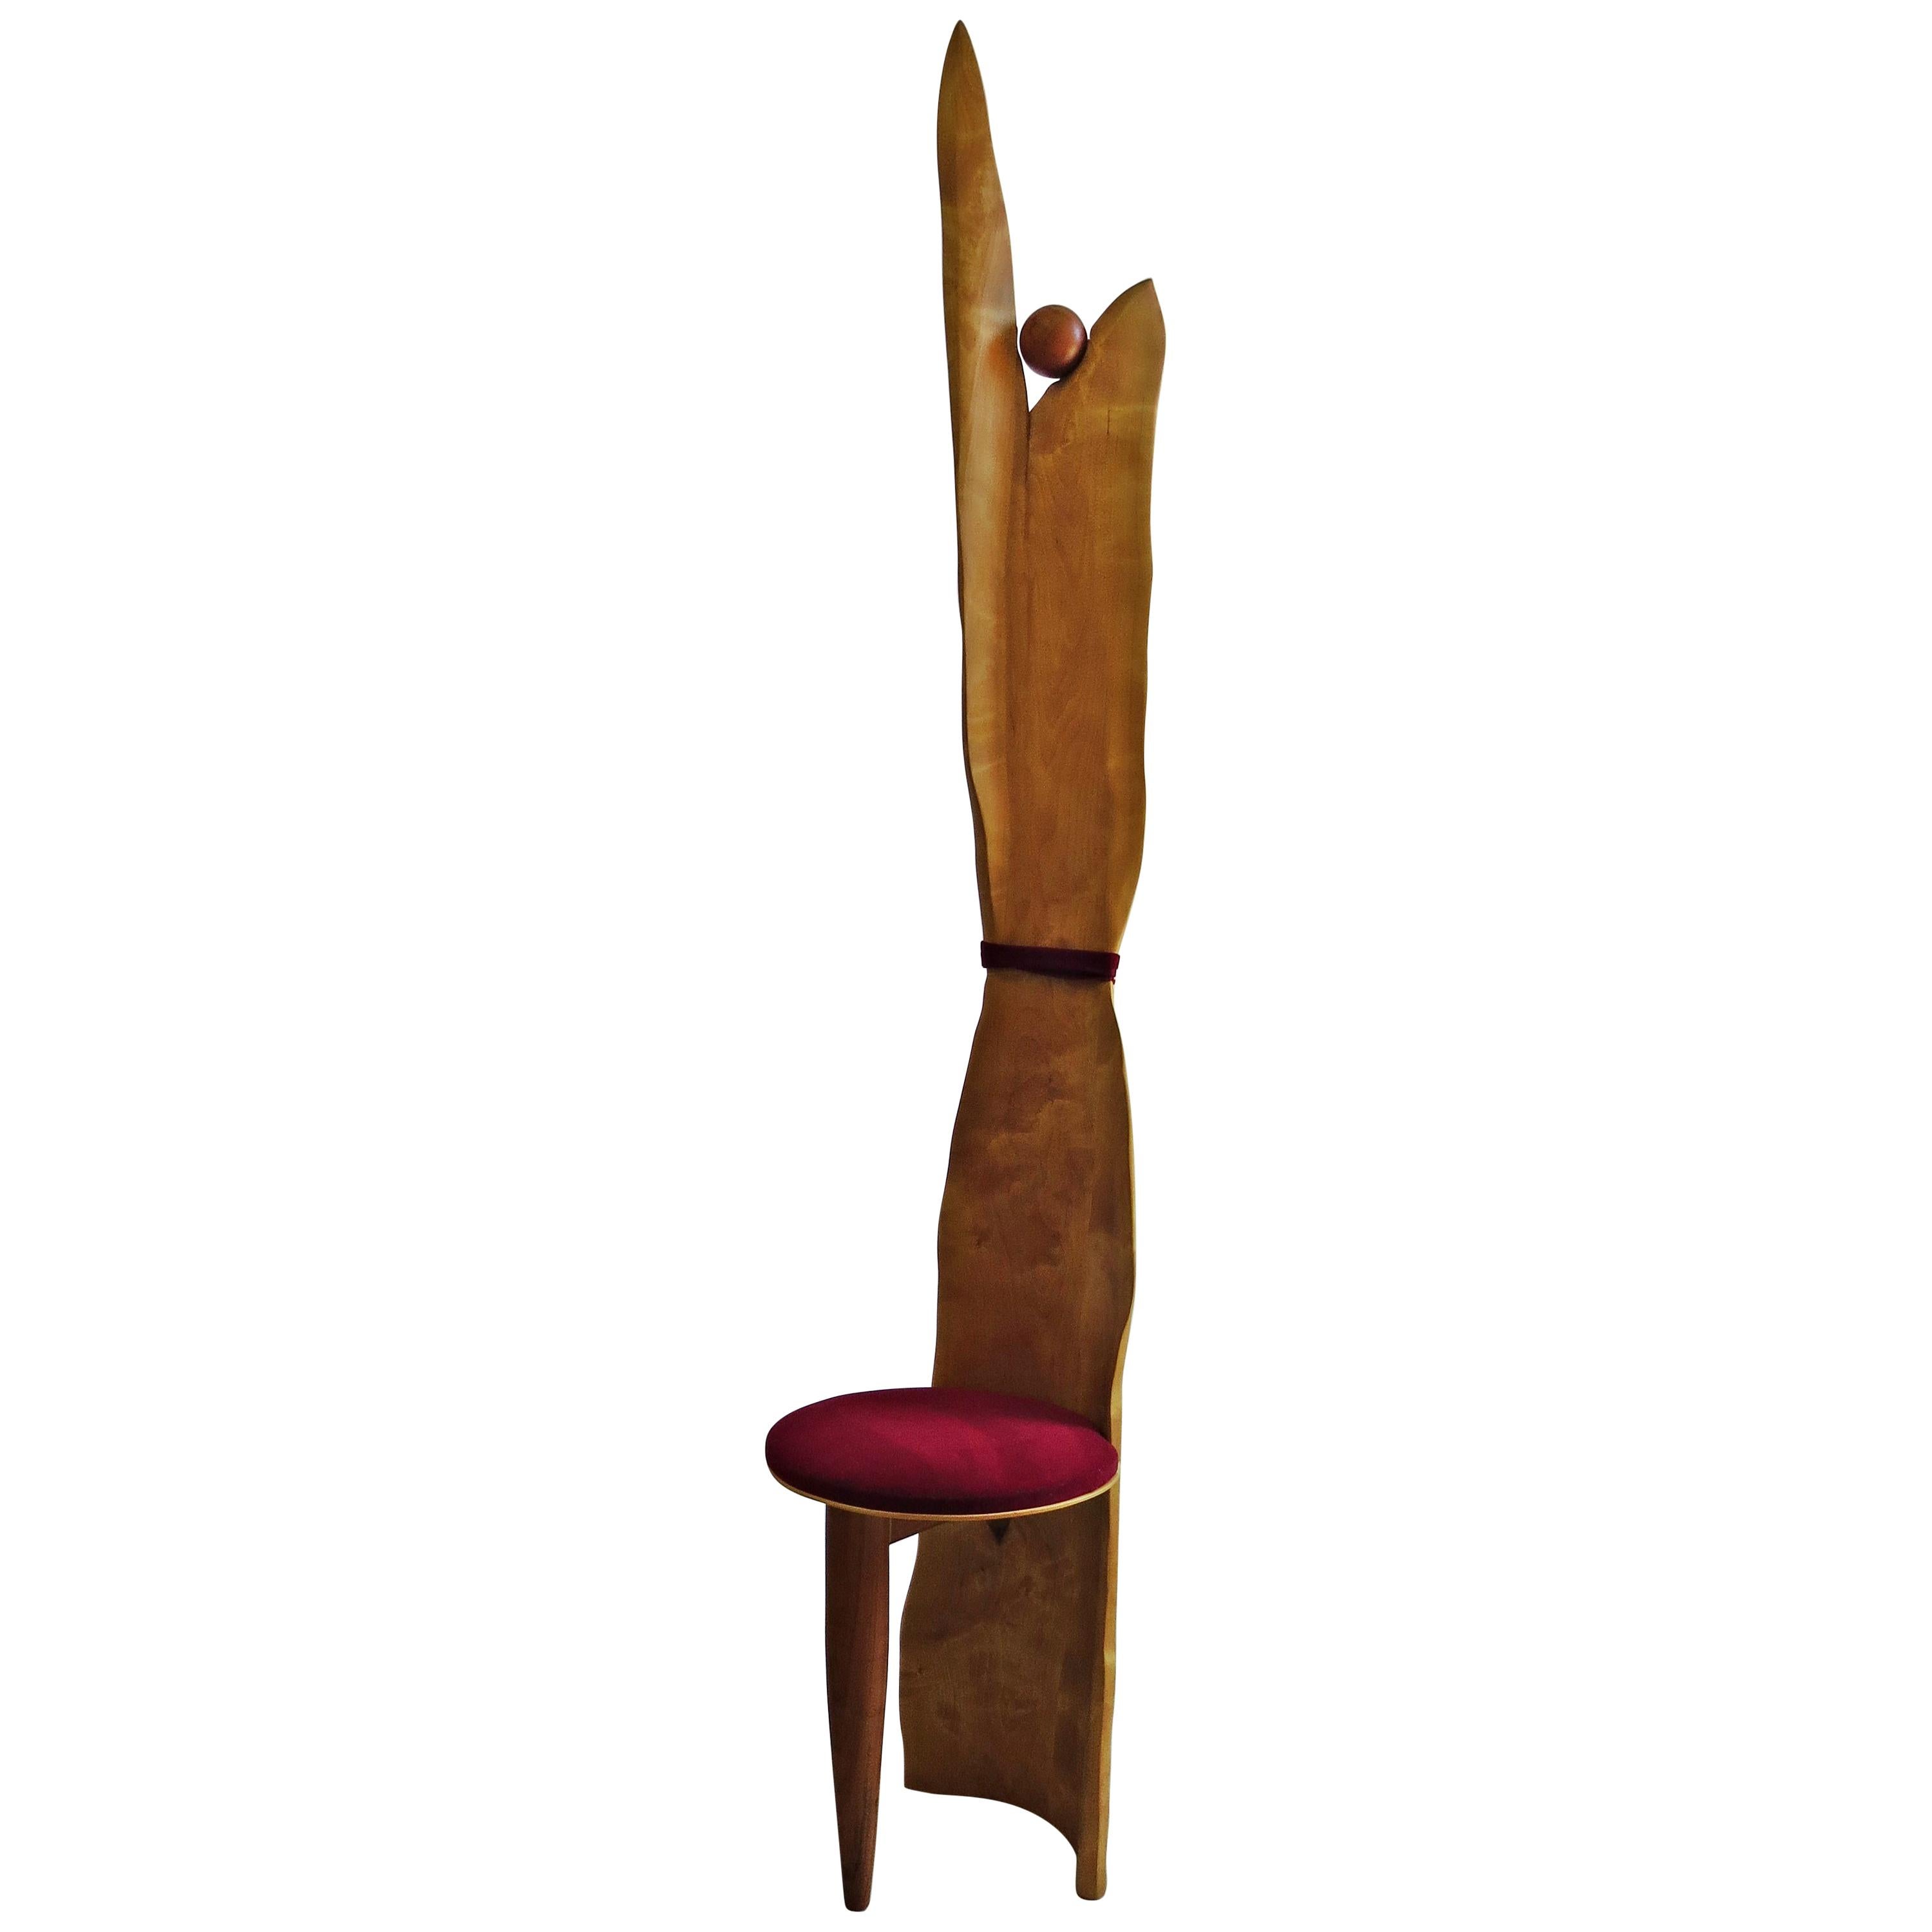 Chaise trône d'objet, fabriquée à la main de manière organique, article unique